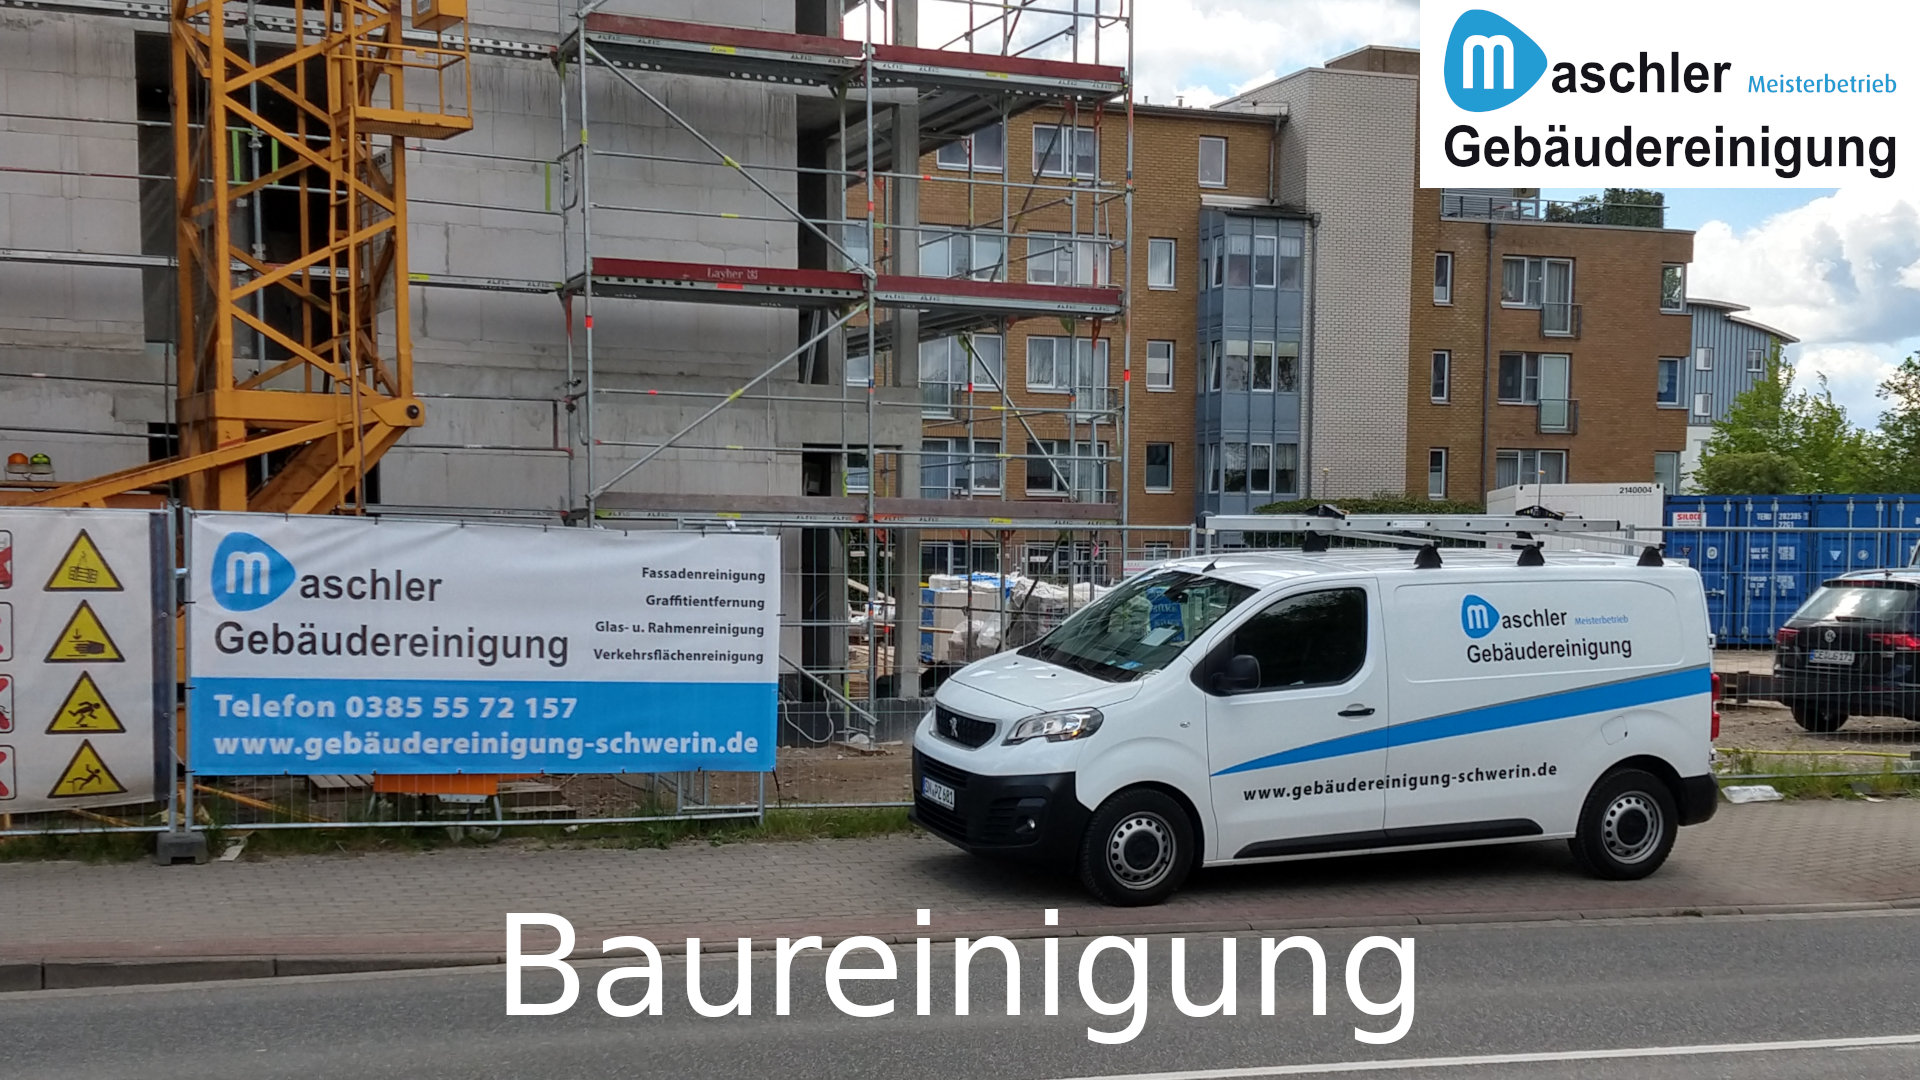 Baustellenreinigung - Gebäudereinigung Maschler Rostock